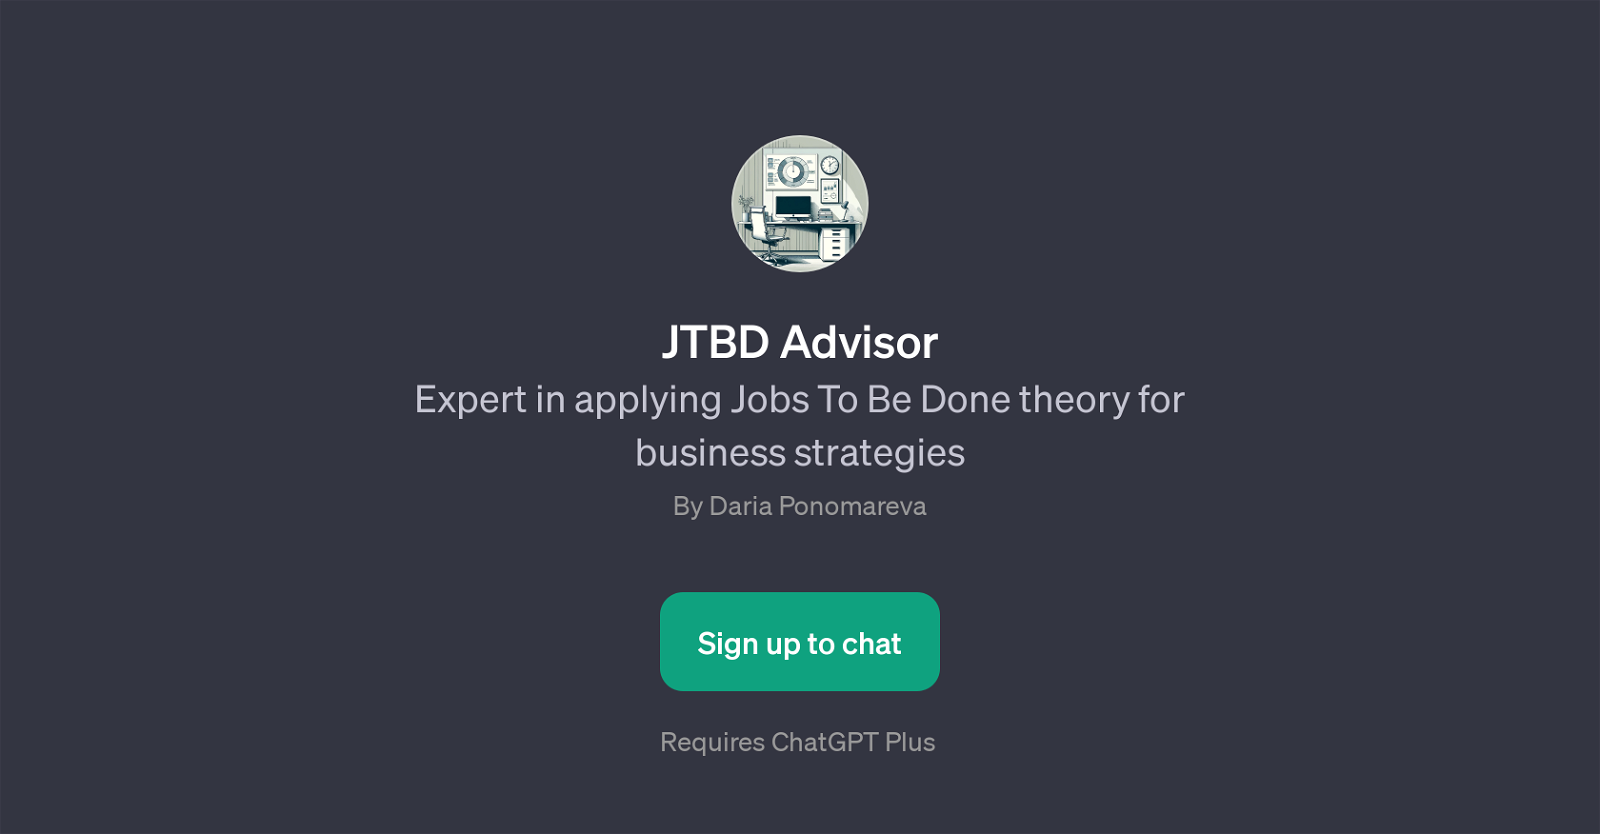 JTBD Advisor website